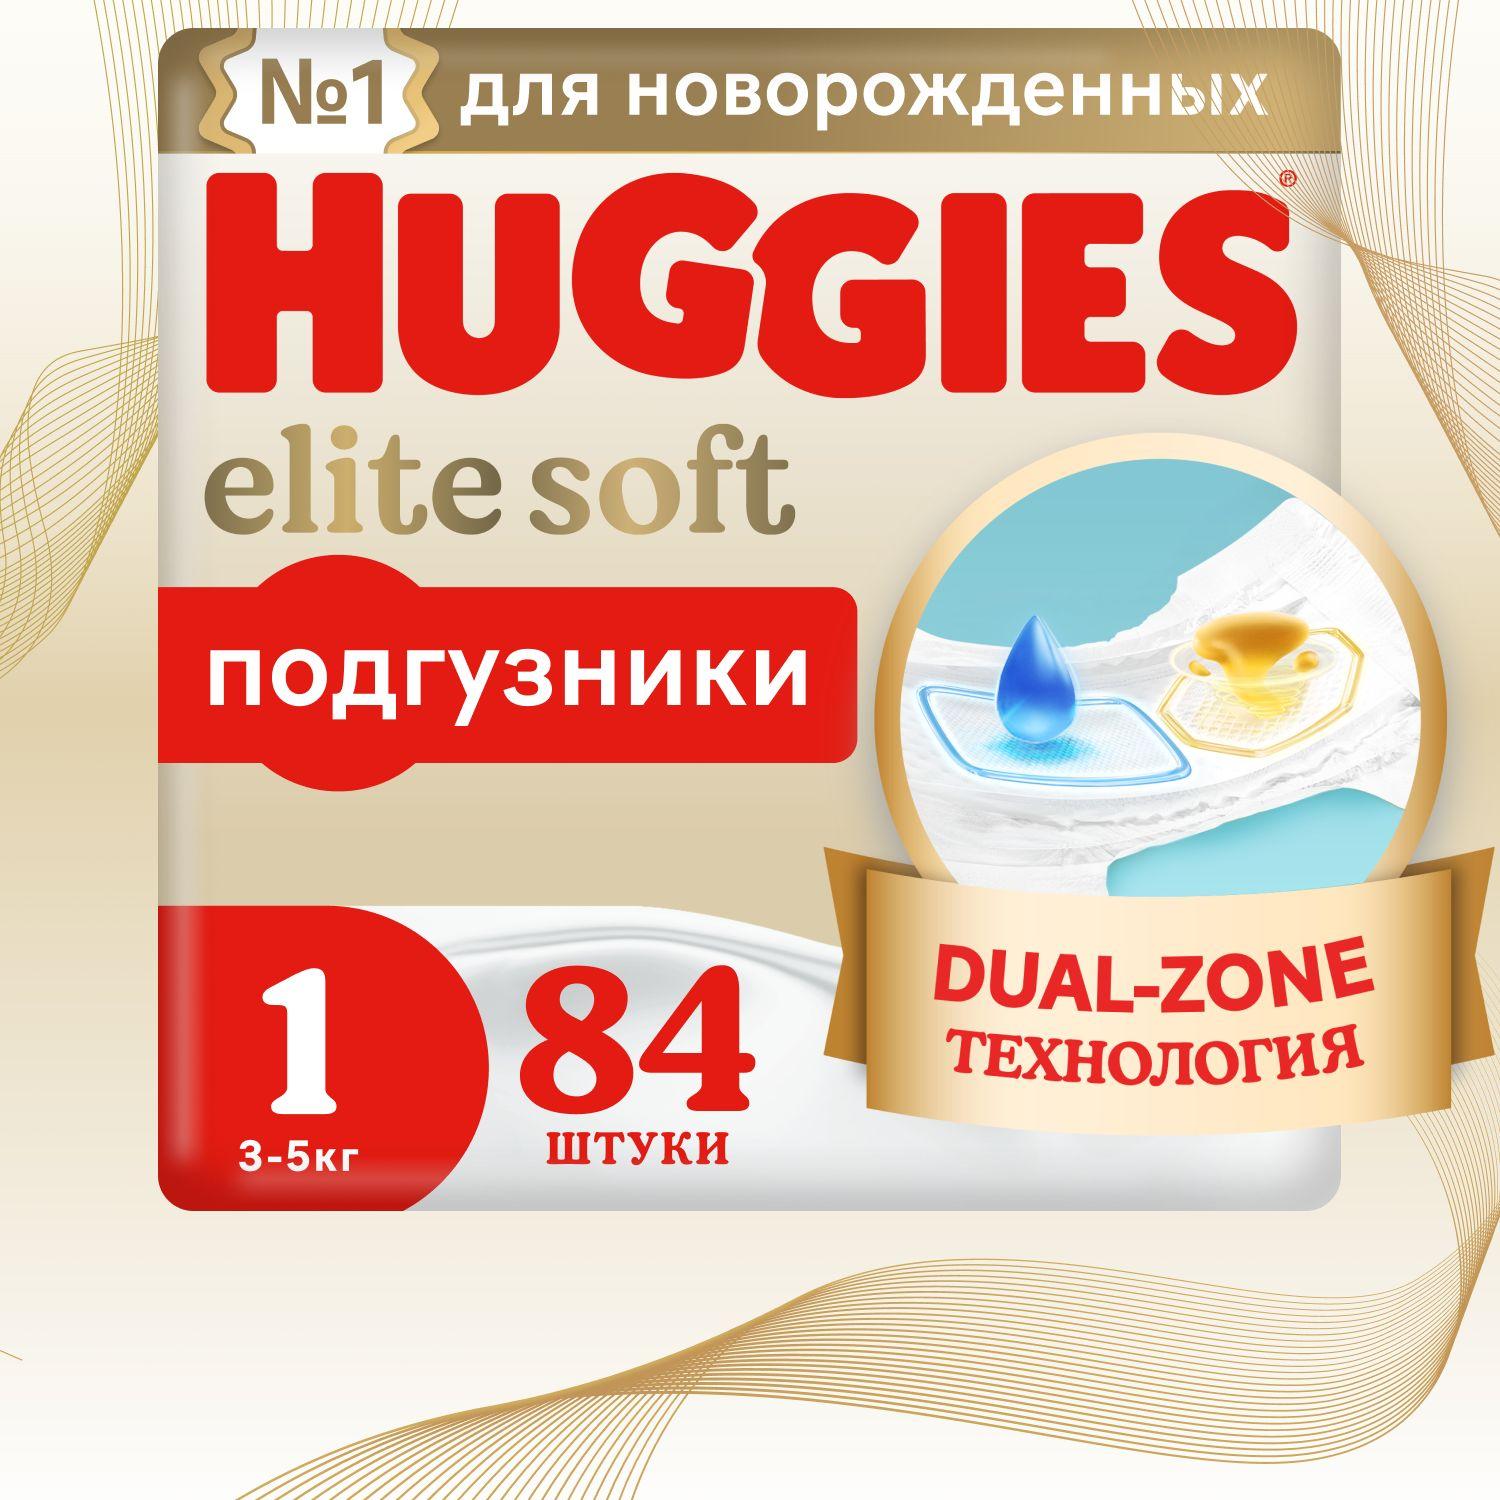 Подгузники для новорожденных Huggies Elite Soft 1 NB размер, 3-5 кг,84 шт